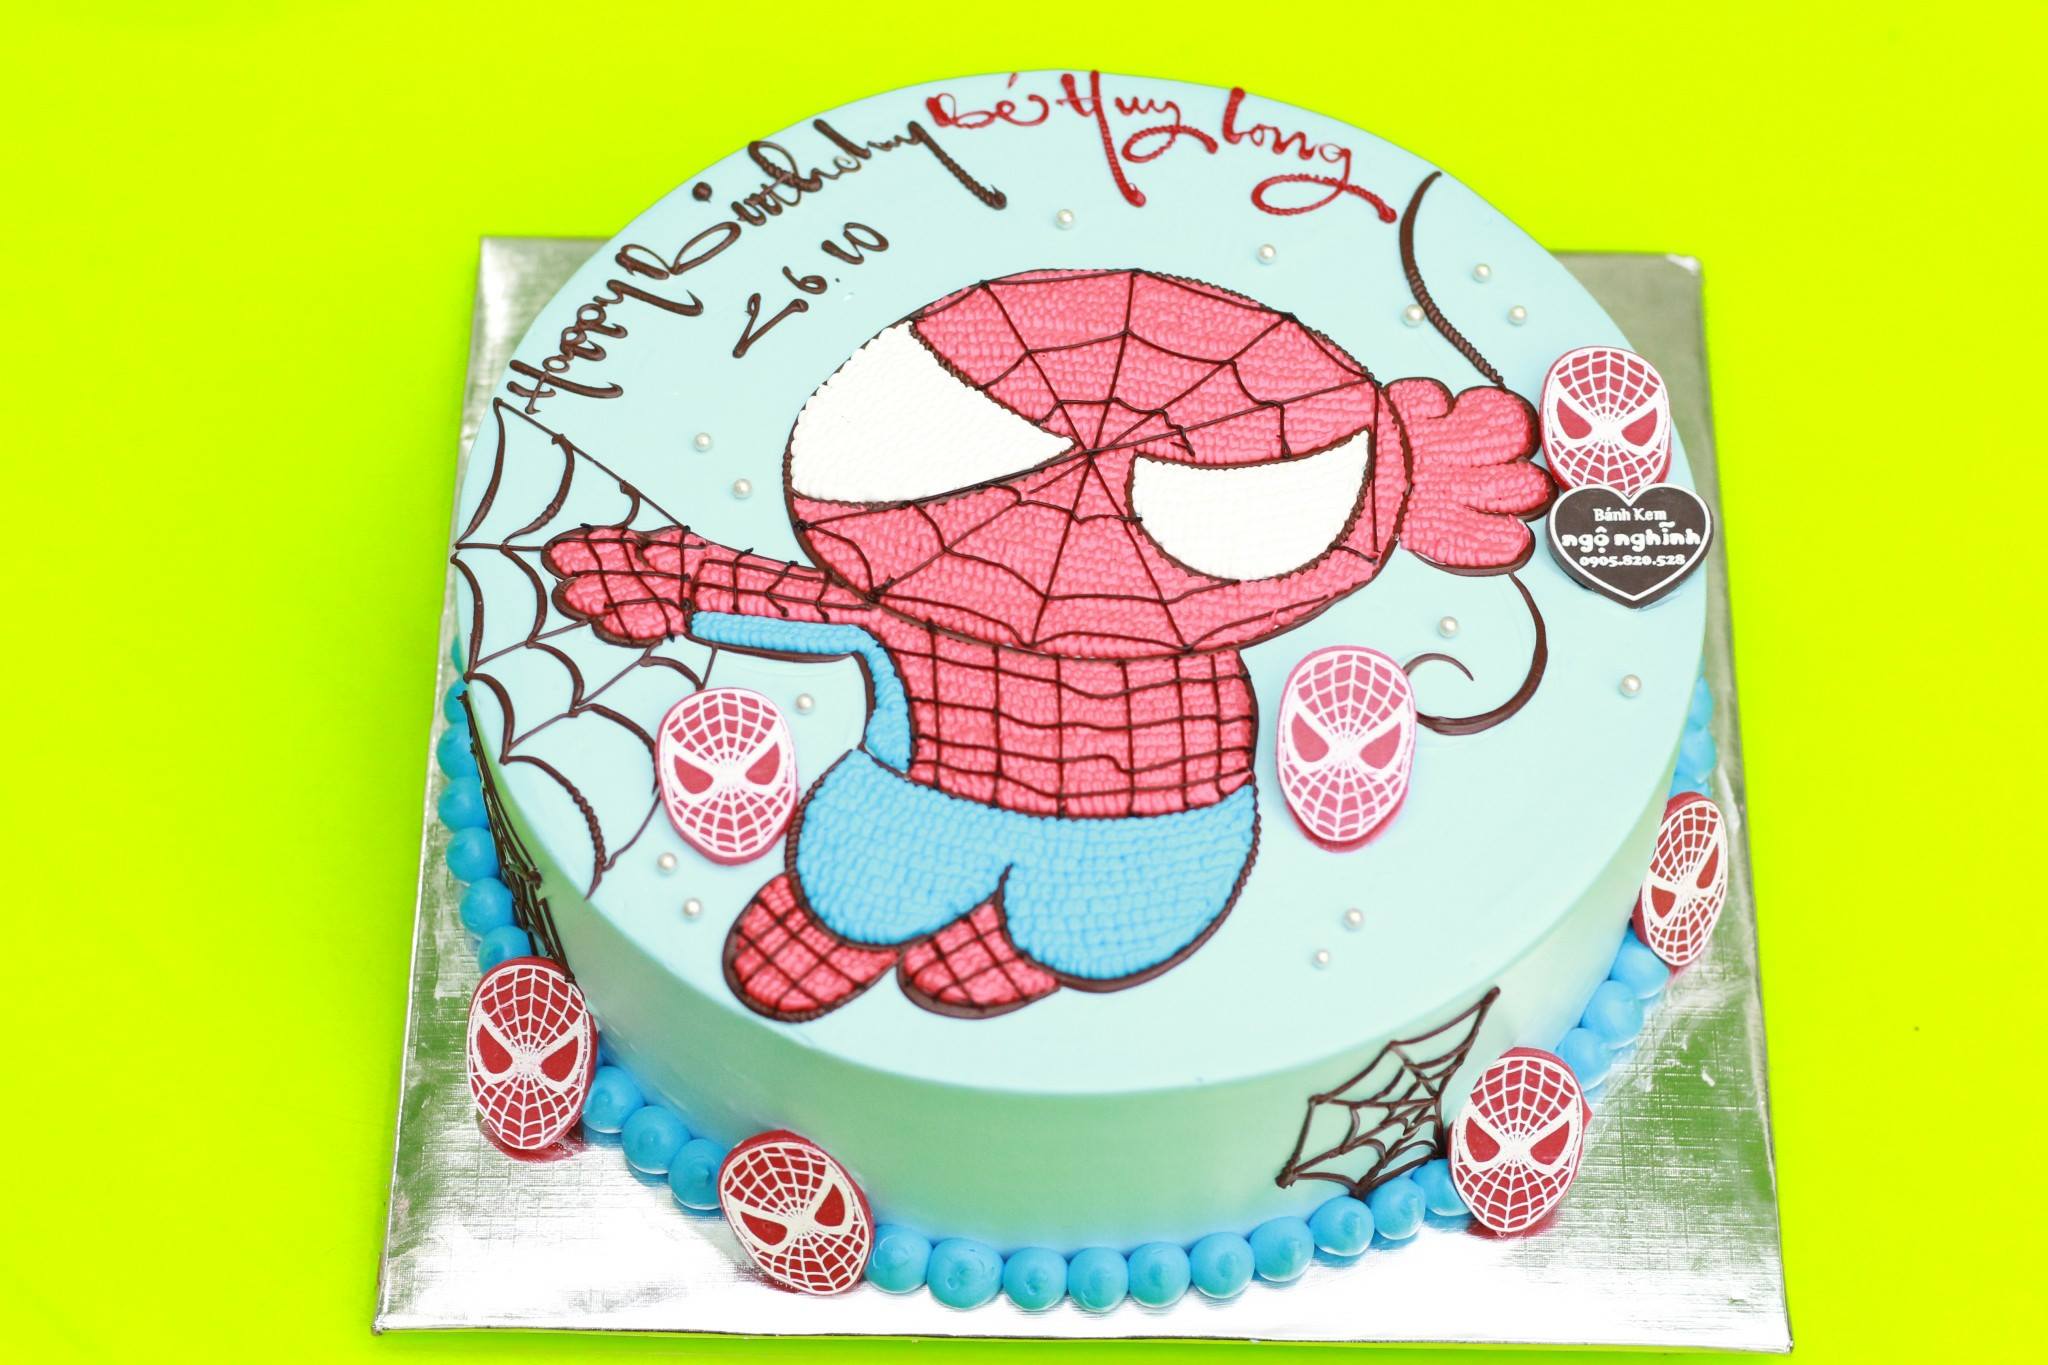 Cùng tìm hiểu chiếc bánh kem sinh nhật vẽ hình người nhện spiderman độc đáo này. Hương vị thơm ngon và hình ảnh đầy màu sắc của người nhện sẽ mang đến cho bạn cảm giác hài lòng, hạnh phúc và thỏa mãn. Đây sẽ là món quà đặc biệt dành tặng cho người thân của bạn trong những dịp đặc biệt.